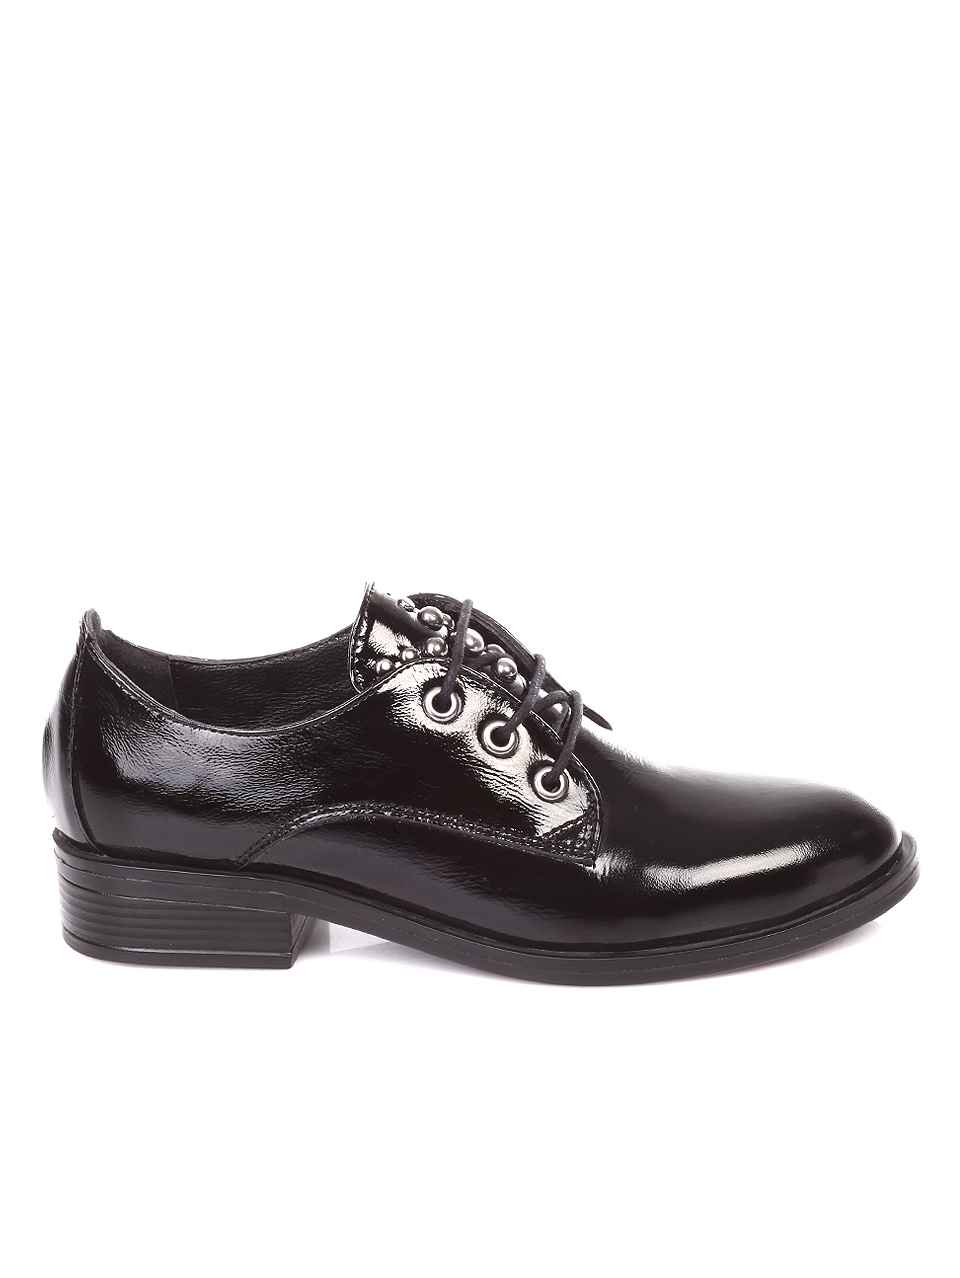 Ежедневни дамски обувки от естествен лак 3AT-181053 black